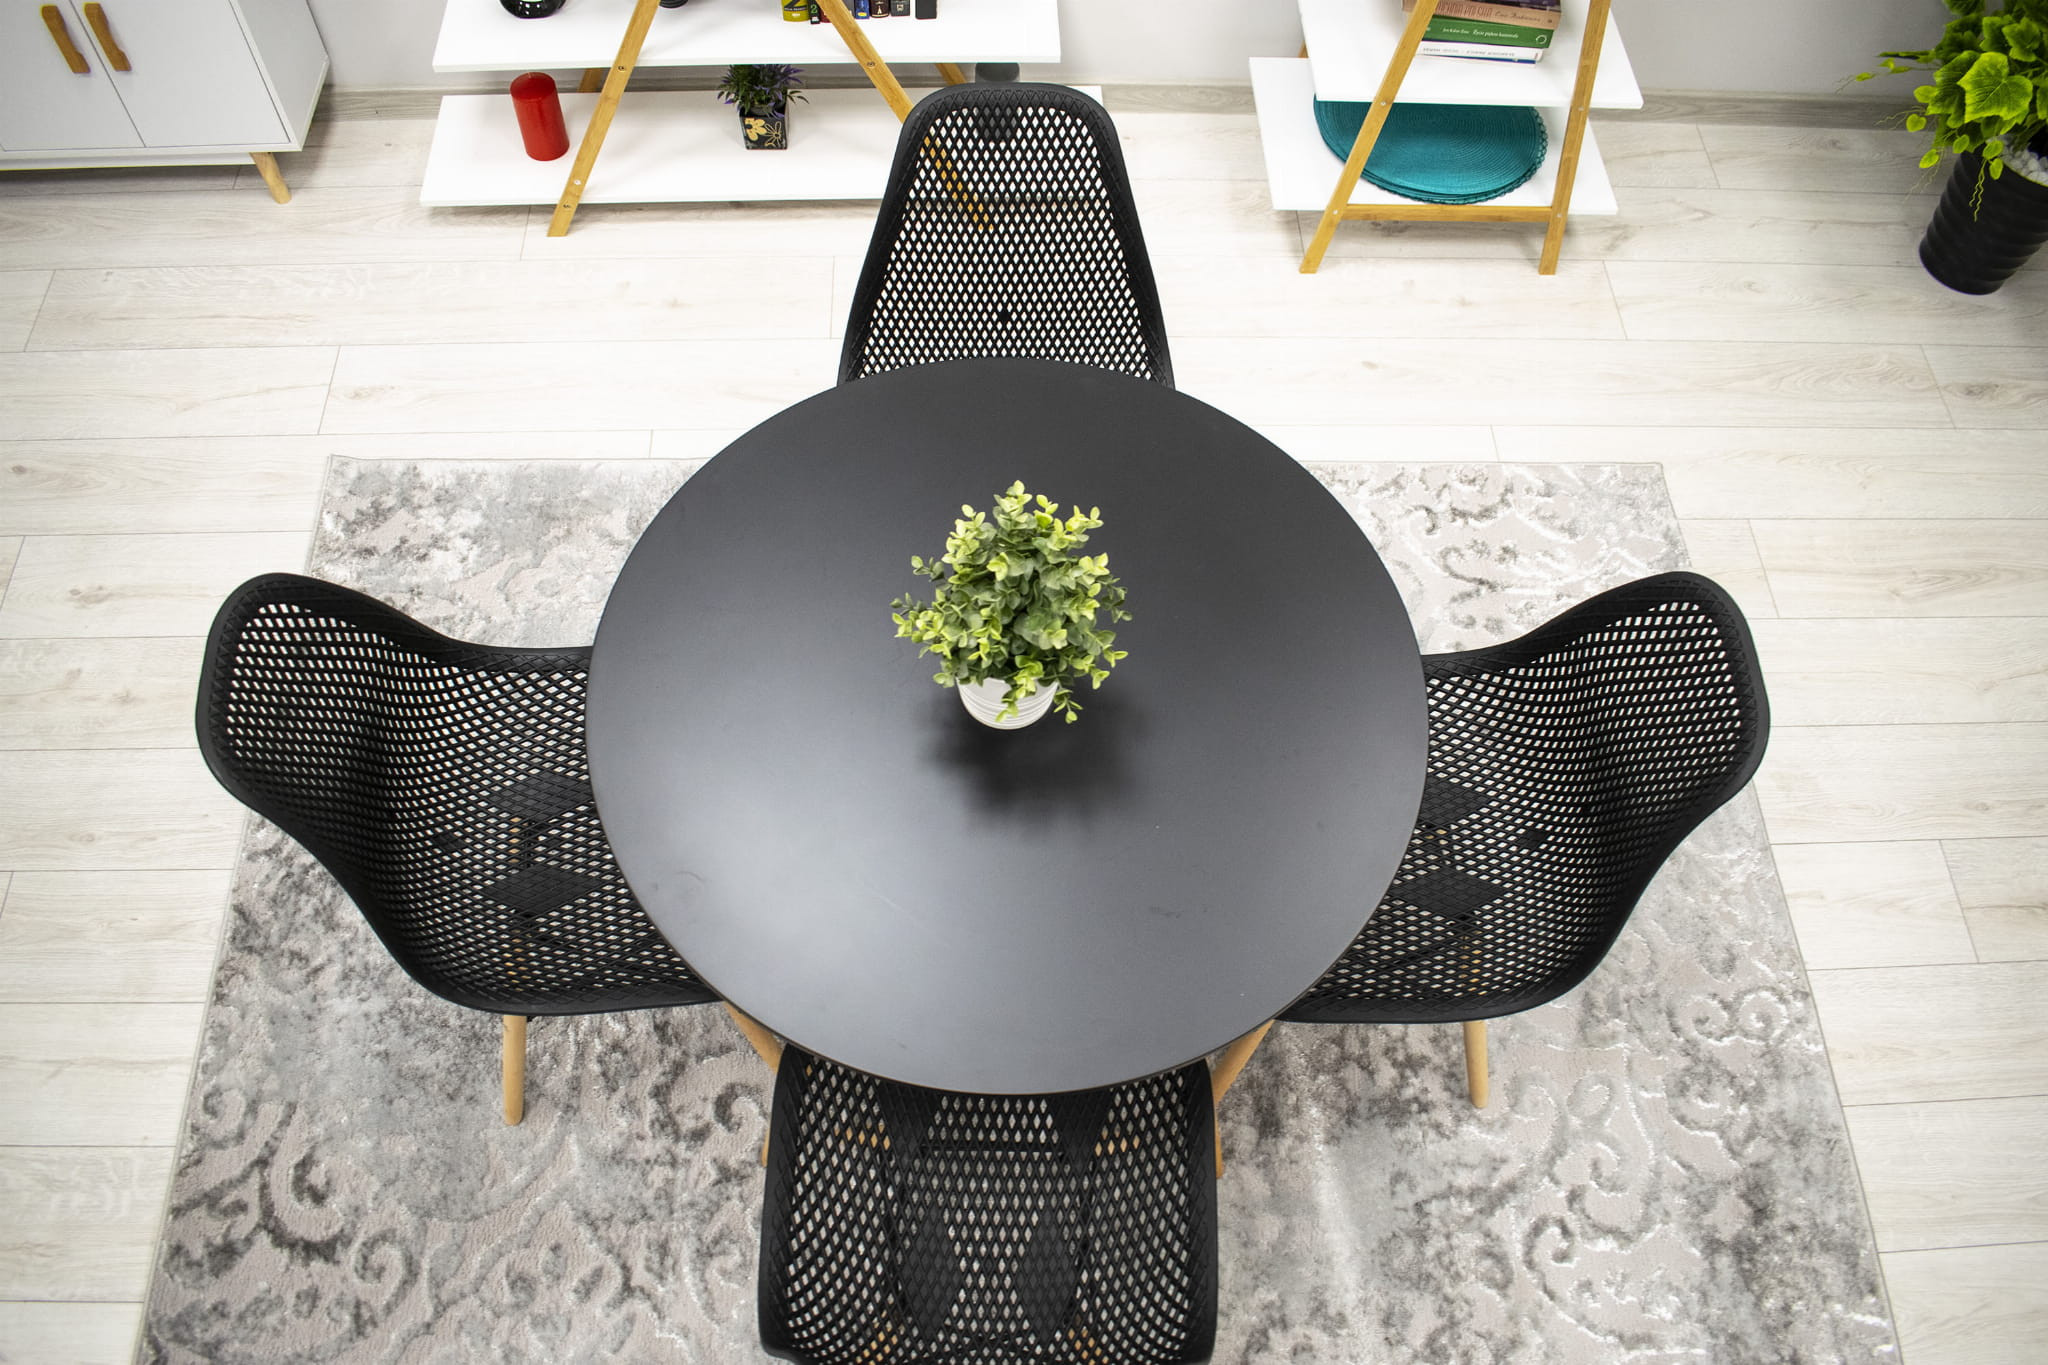 Set dvou jídelních židlí MARO černé (2ks)